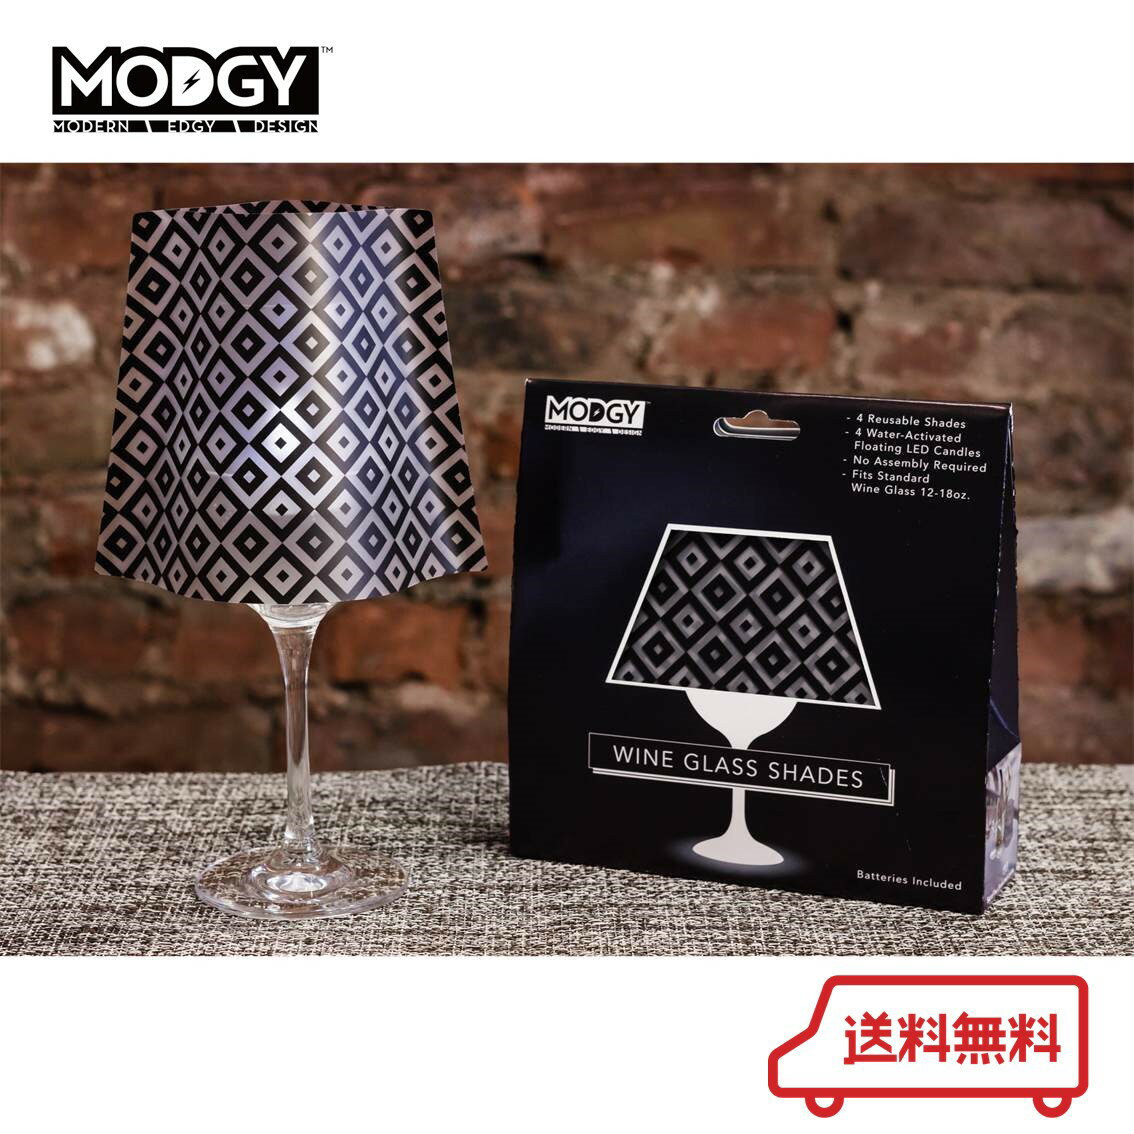 【50％以上OFF!】 ギフト MODGY モッジー ワイングラスシェード ブラックダイヤモンド 2セット入